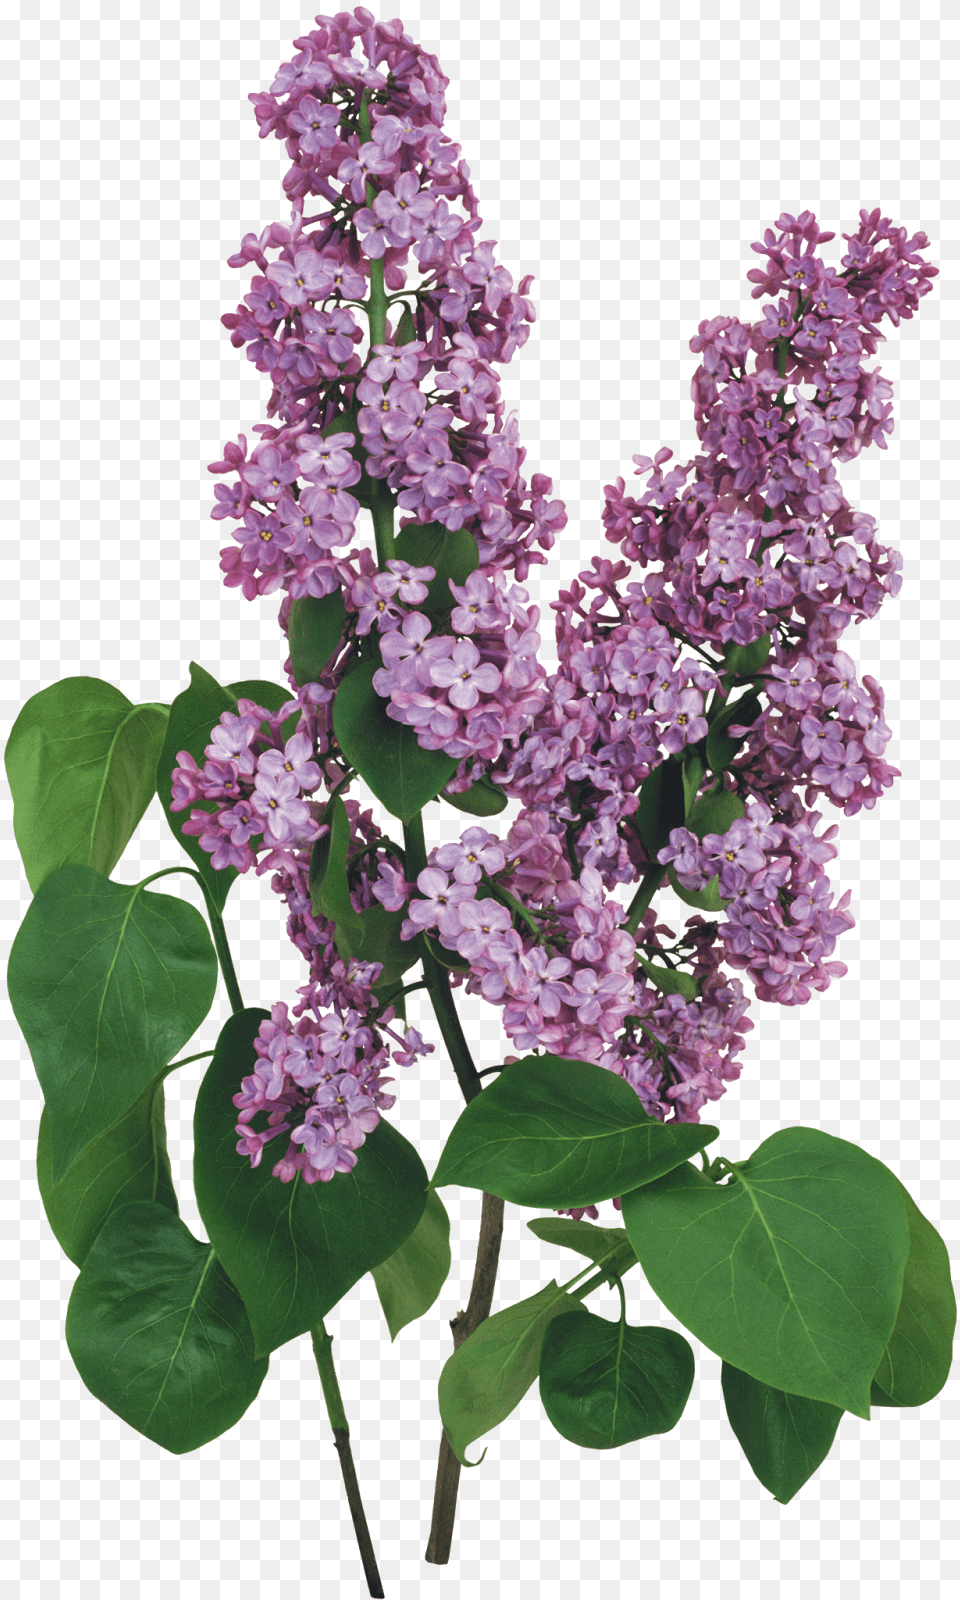 Flores Blancas Flower Border Designs, Plant, Lilac Free Transparent Png